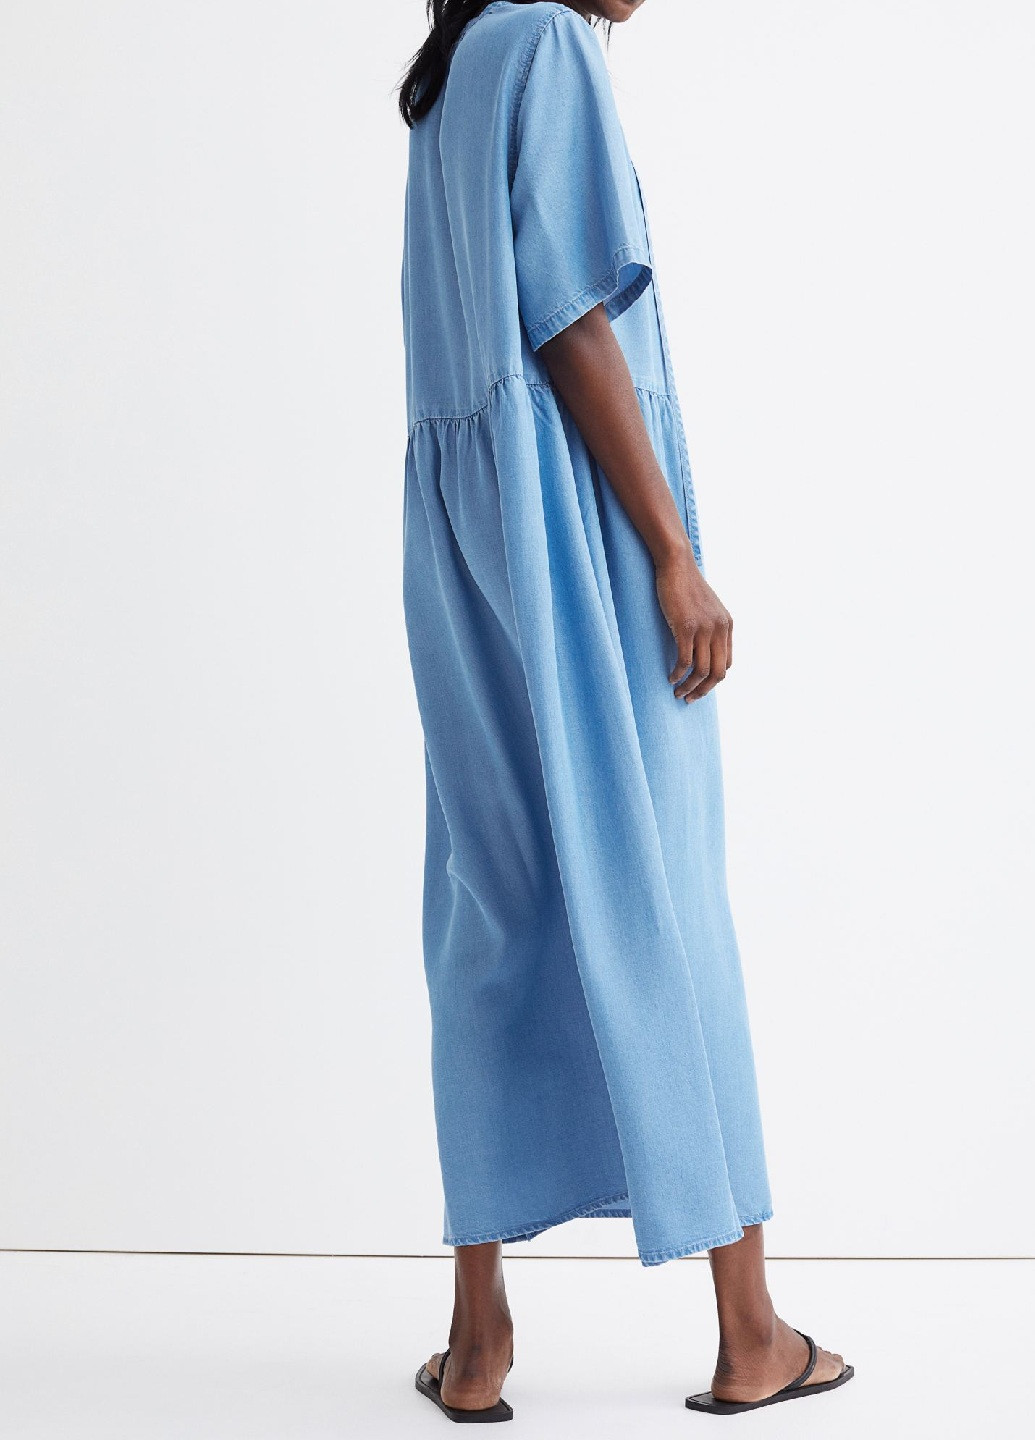 Світло-блакитна джинсова сукня H&M однотонна